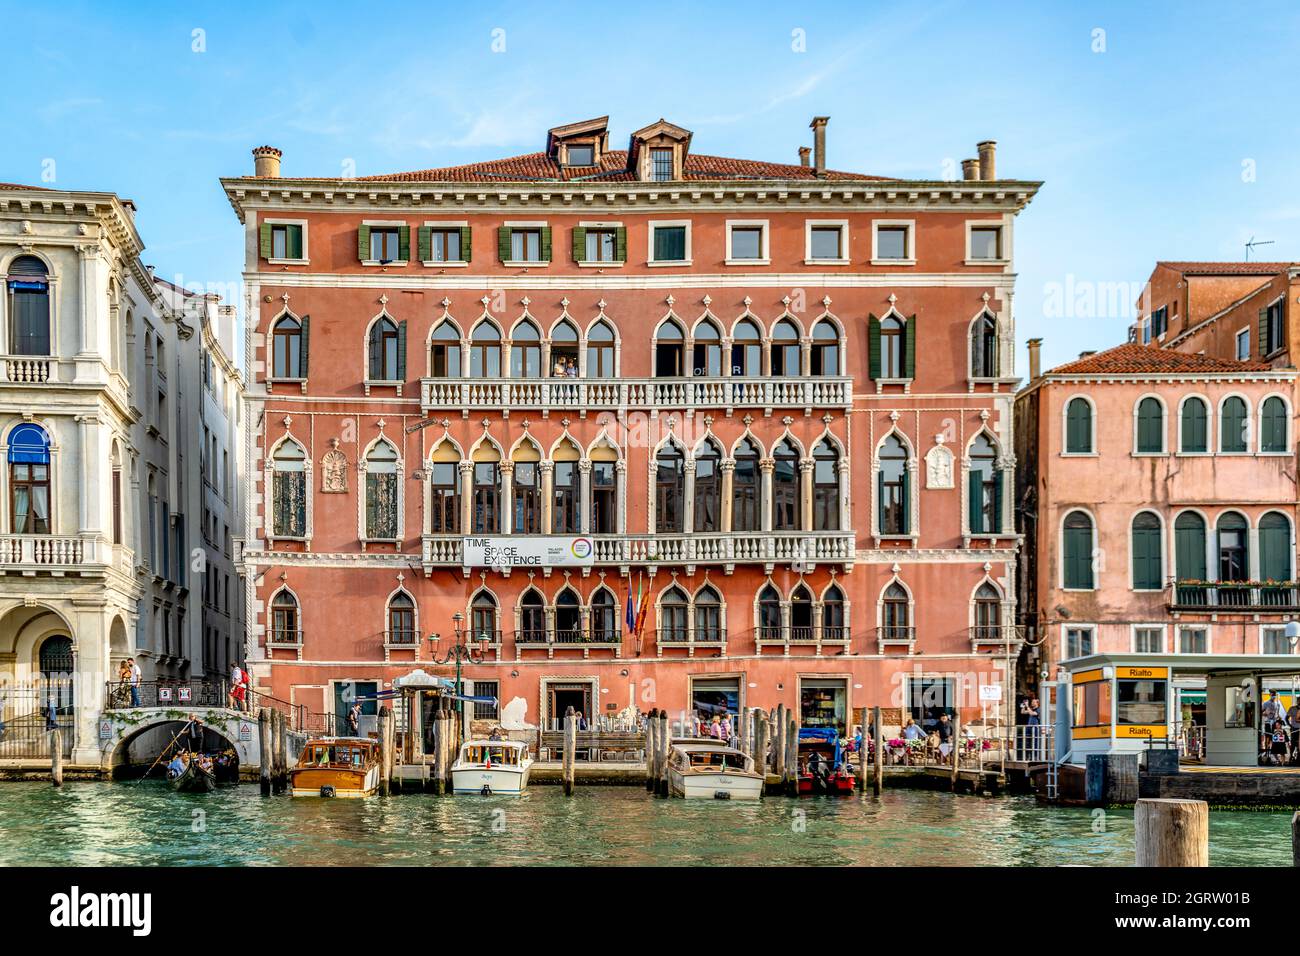 La facciata di Palazzo Bembo si affaccia sul Canal Grande, costruita in stile veneziano gotico-bizantino nel XV secolo, Venezia, Italia Foto Stock